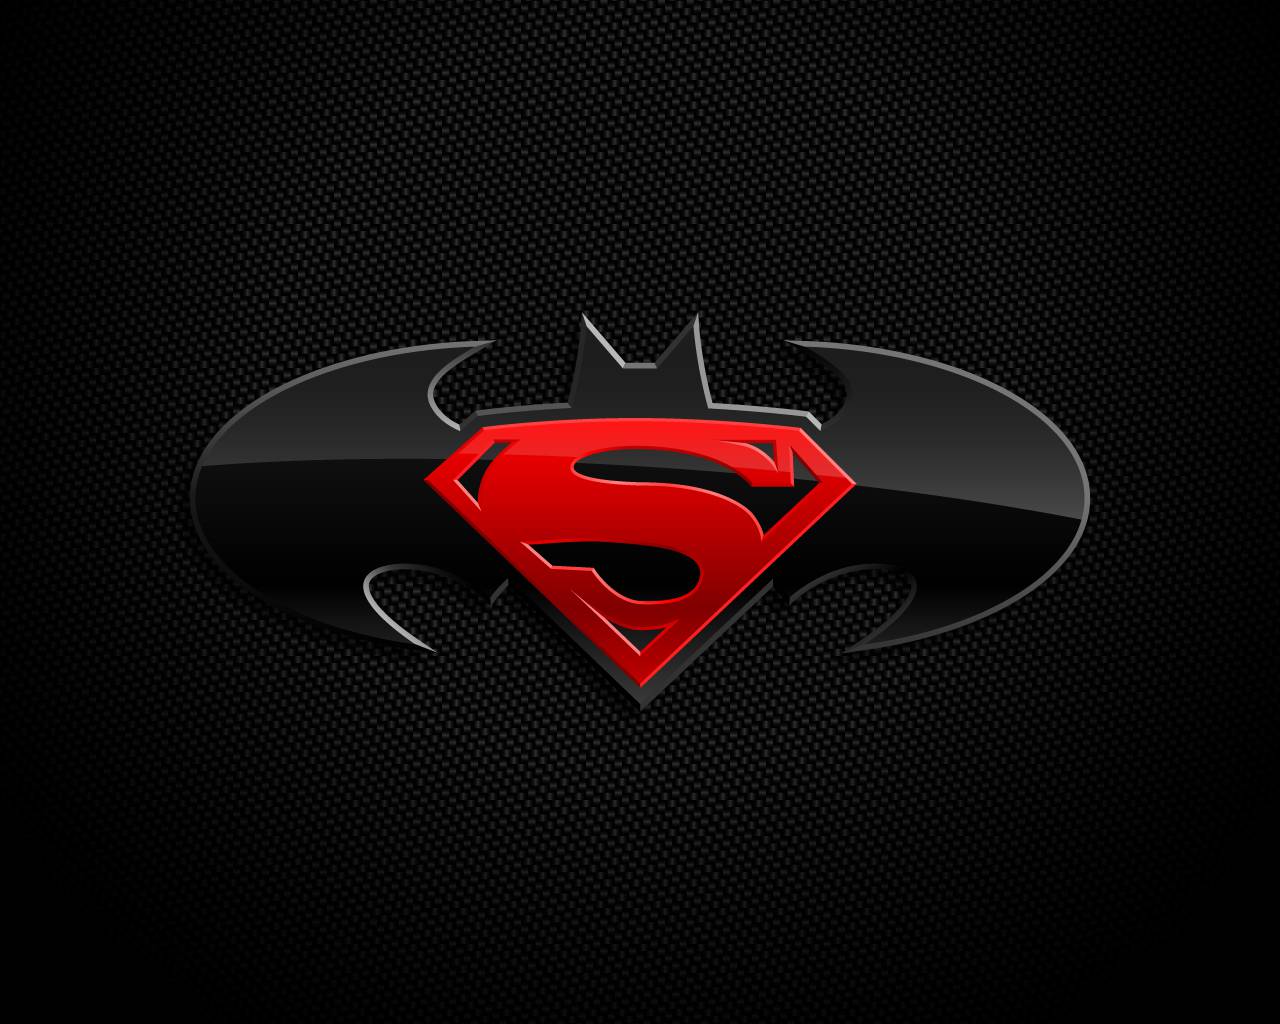 Batman logo dc comics superman wallpaper - (#2375) - High Quality ...